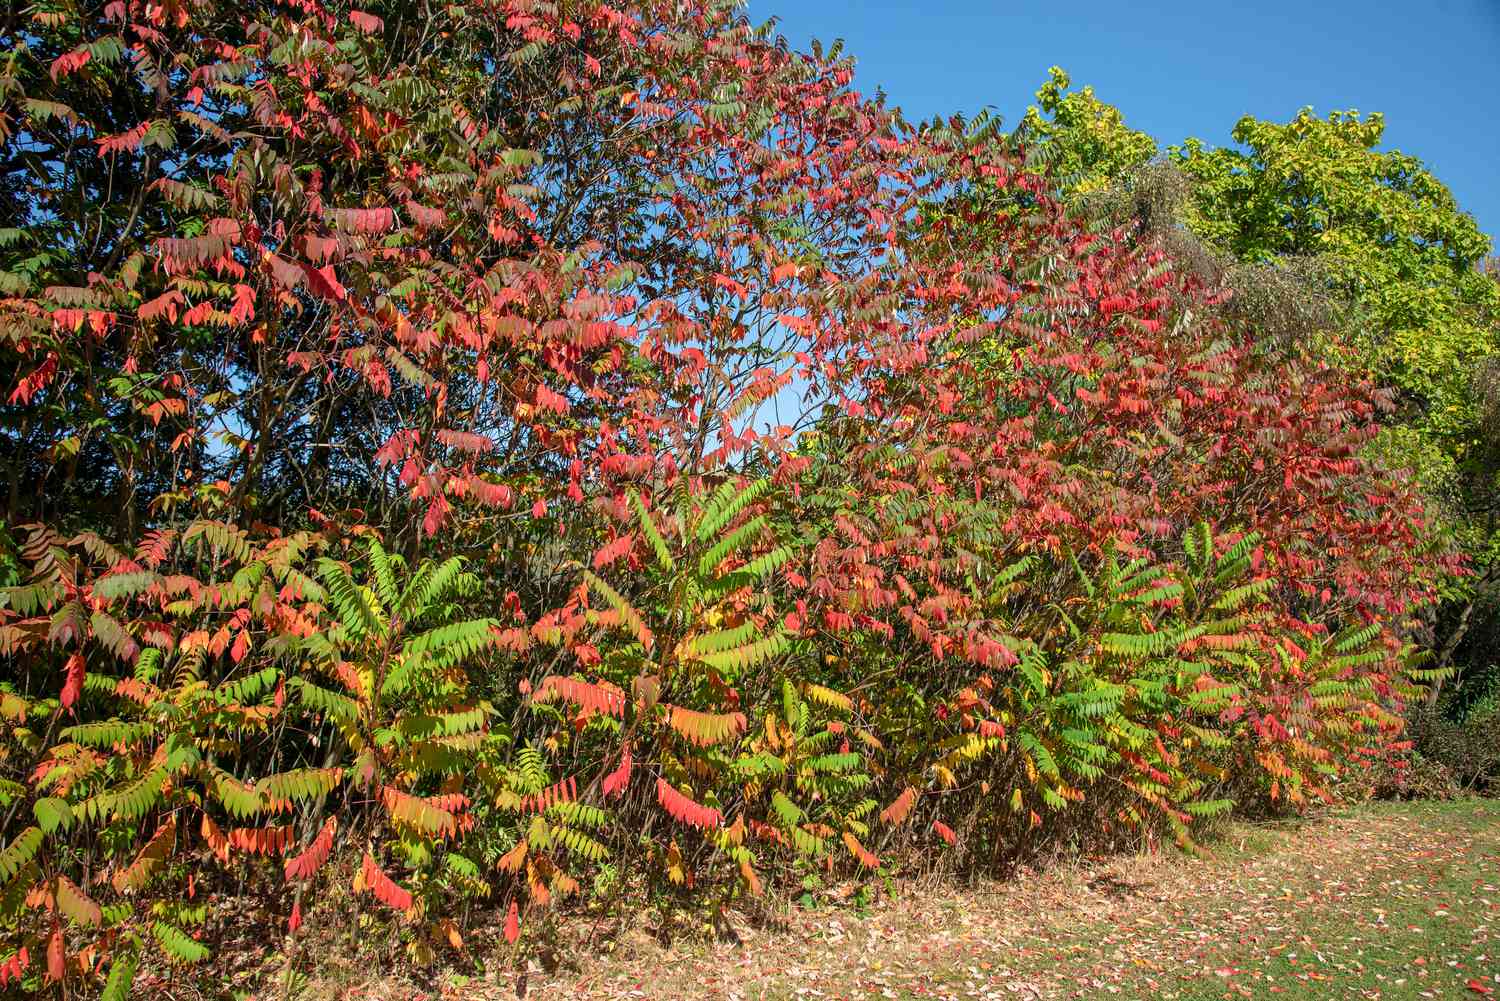 Arbuste de sumac staghorn avec de hautes branches formant un mur de feuilles vertes, rouges et jaunes